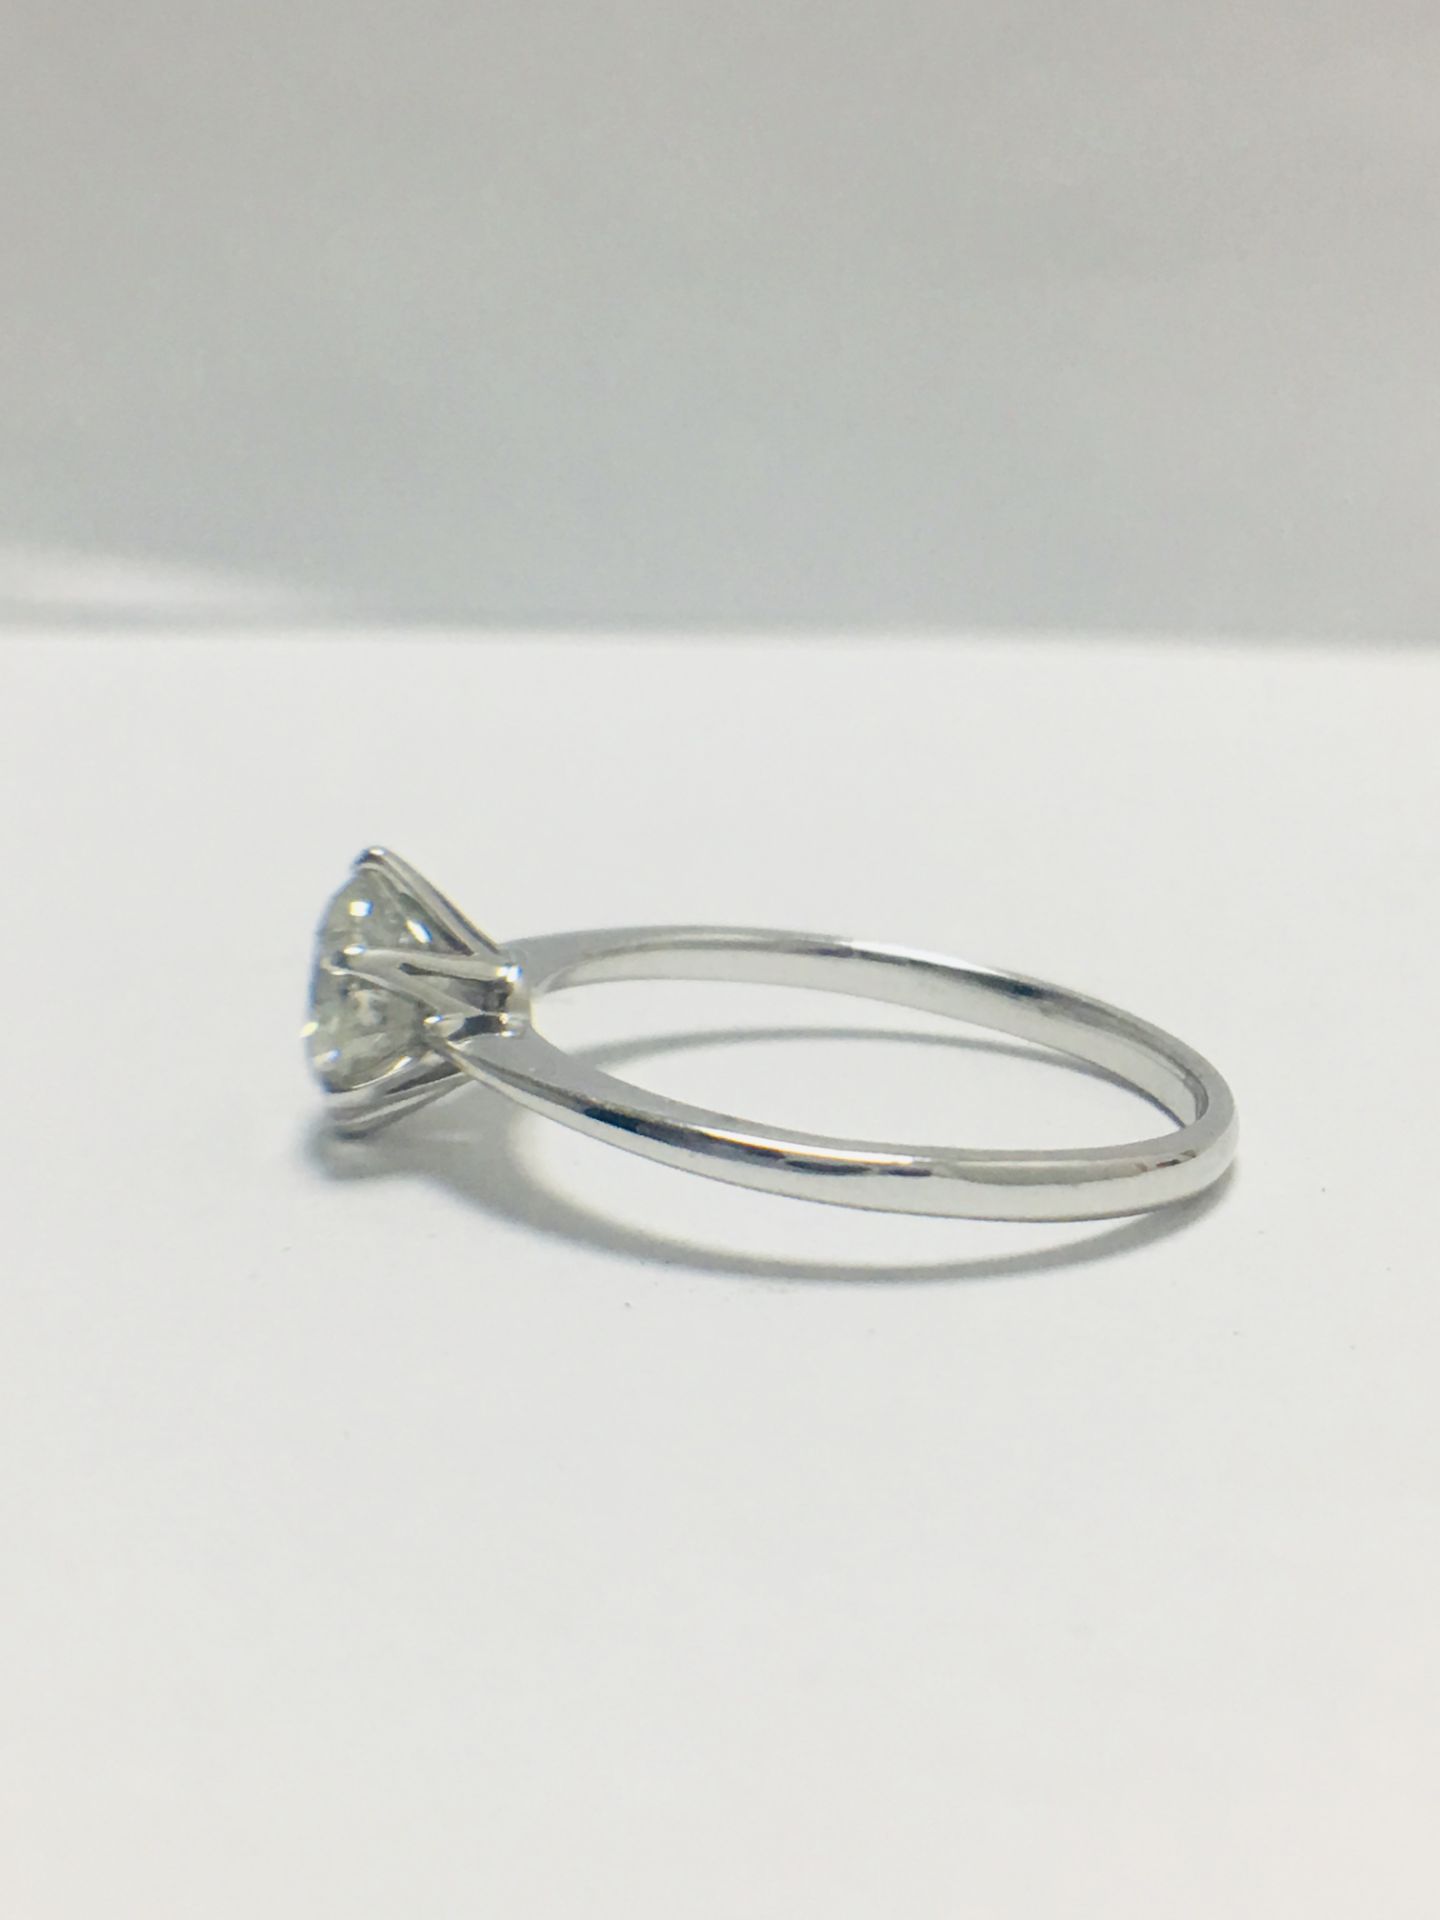 1ct Platinum Diamond Solitaire Ring - Image 3 of 10